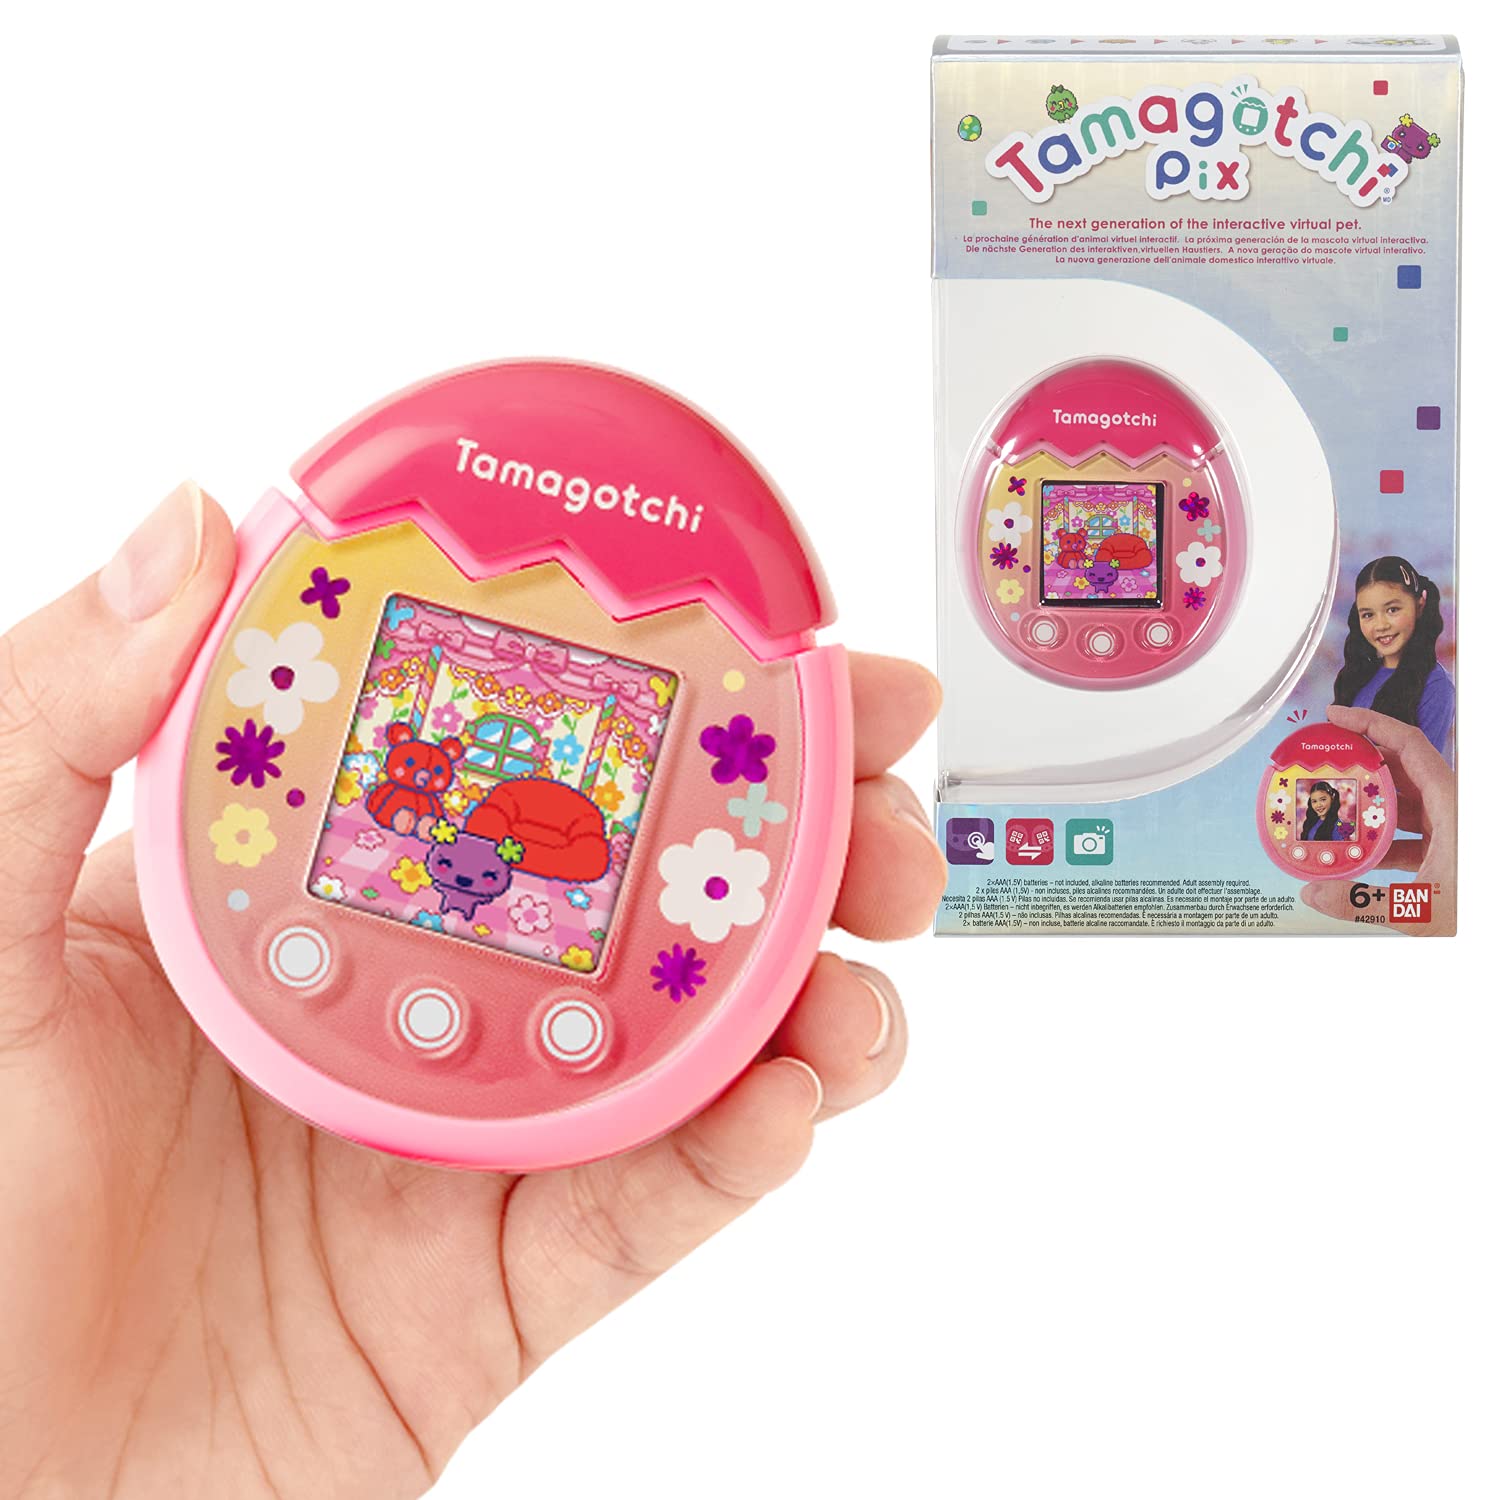 grand escompte Bandai - Tamagotchi - Tamagotchi PIX - Floral rose - animal électronique virtuel avec écran couleur, boutons tactiles jeux et appareil photo - 42911 TAmcC35gK mode